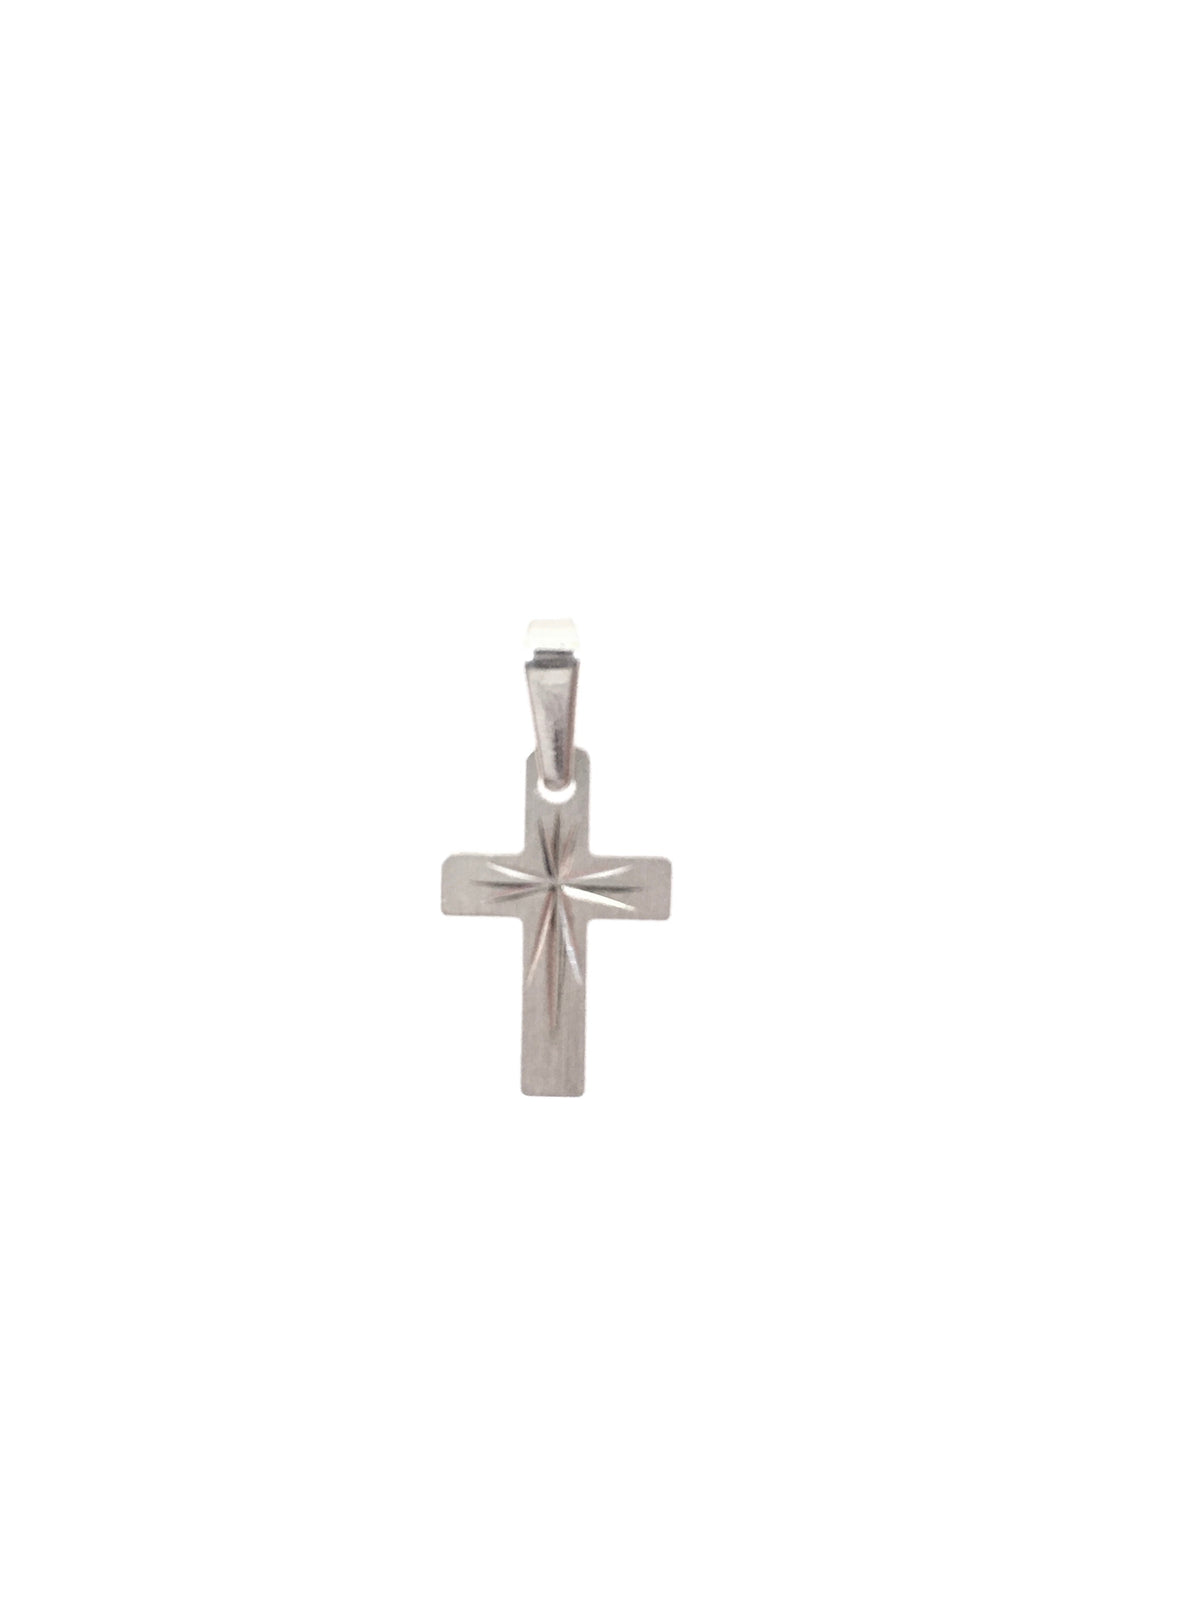 Dije de cruz central grabada en oro blanco de 10 quilates - 20 mm x 10 mm